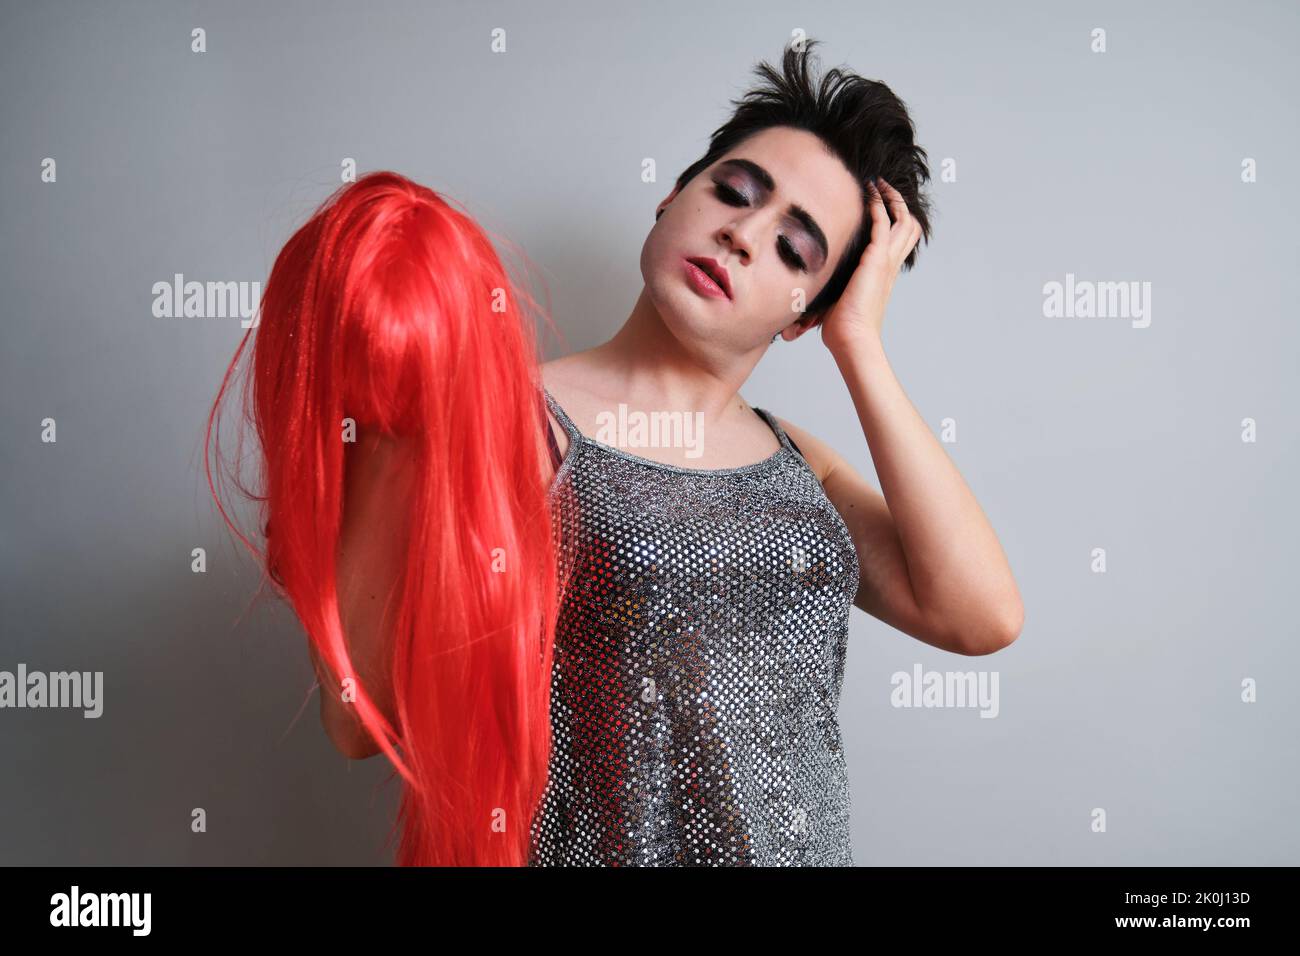 Portrait de la personne transgenre qui prend la perruque rouge et regarde l'appareil photo. Banque D'Images